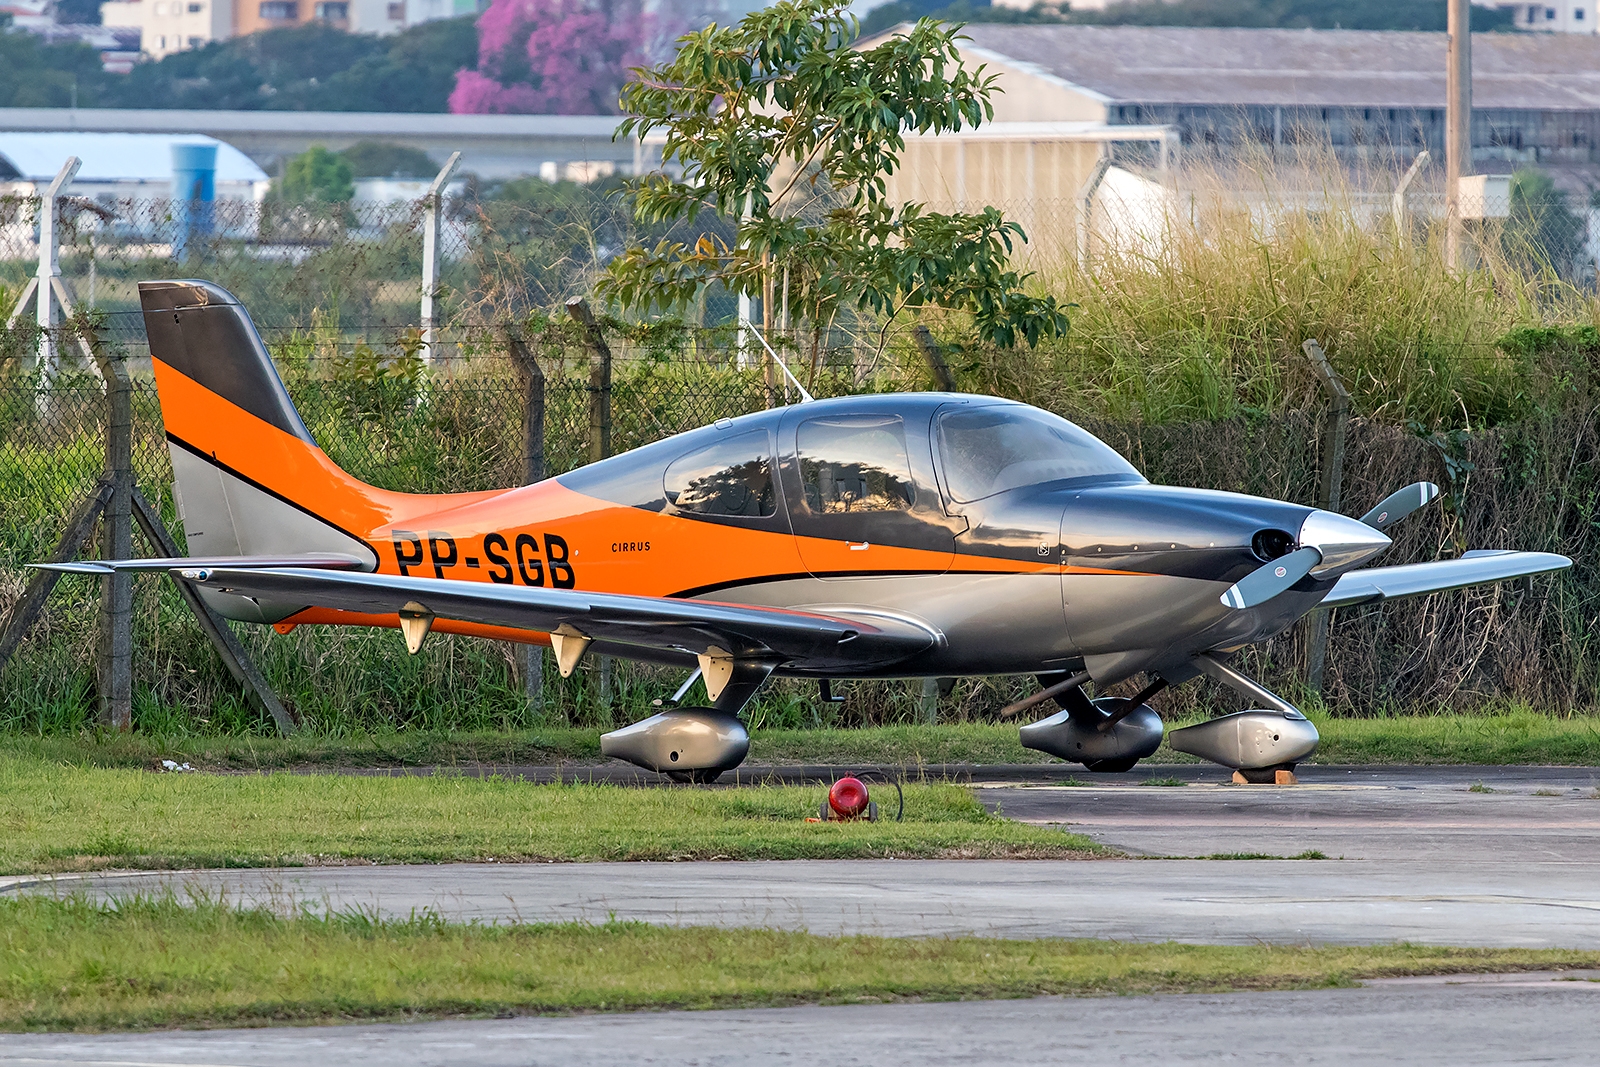 PP-SGB - Cirrus SR-20